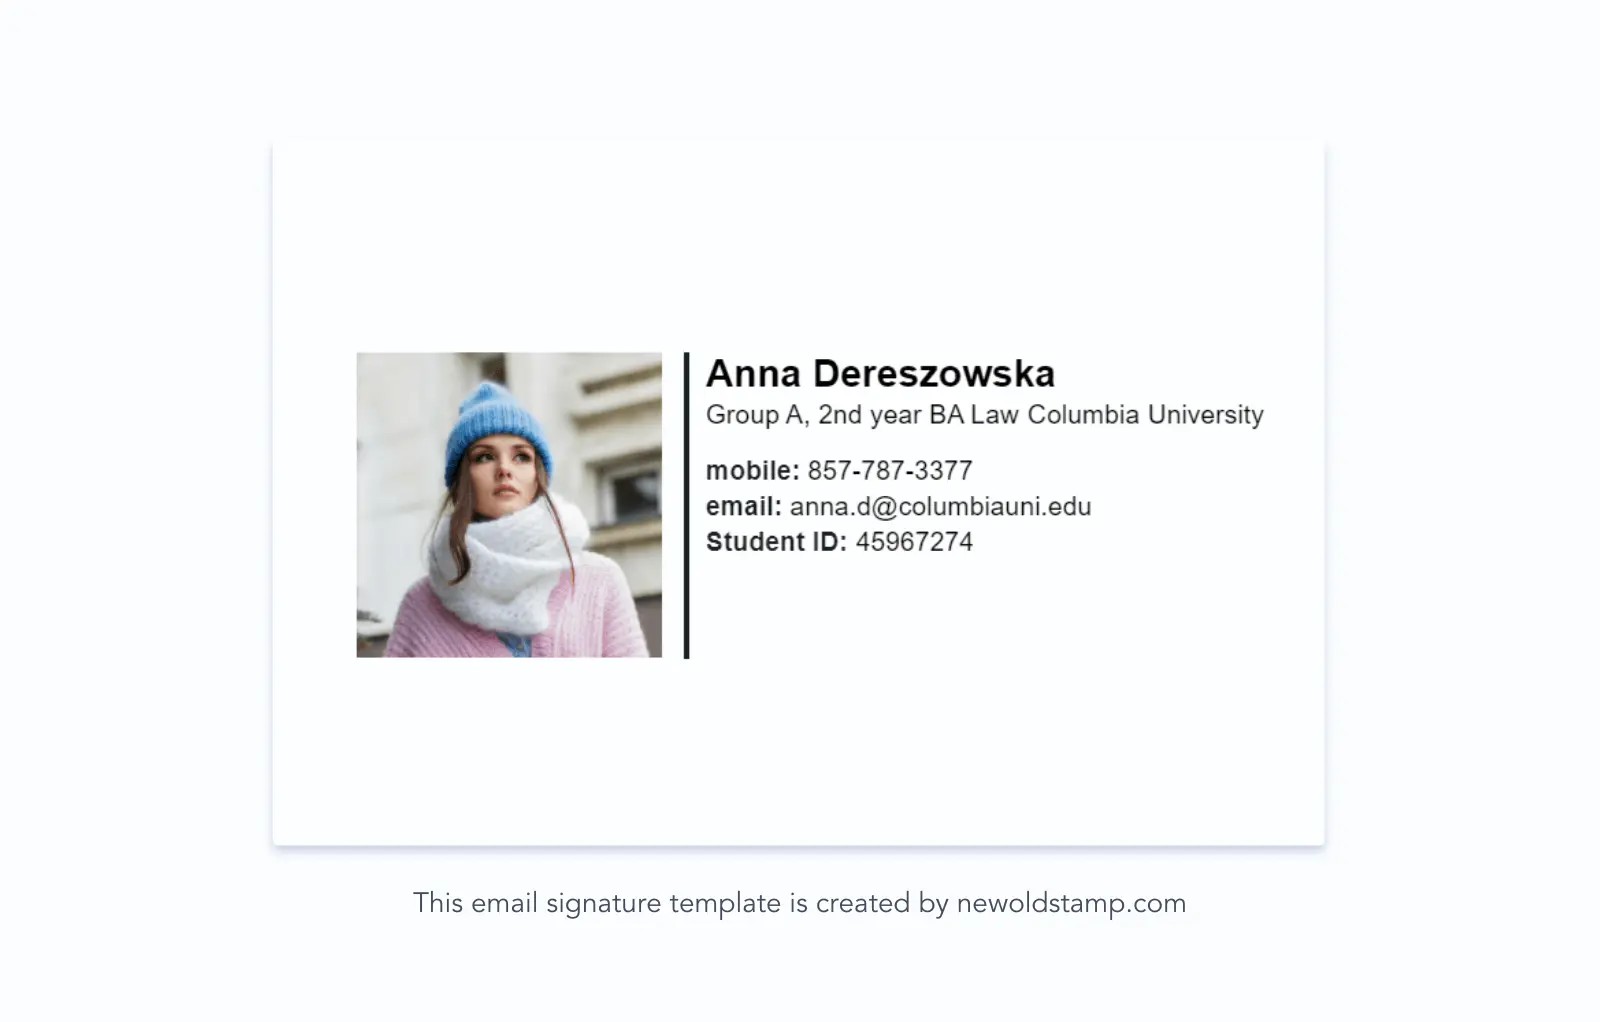 Example 1. Simple undergraduate college student email signature